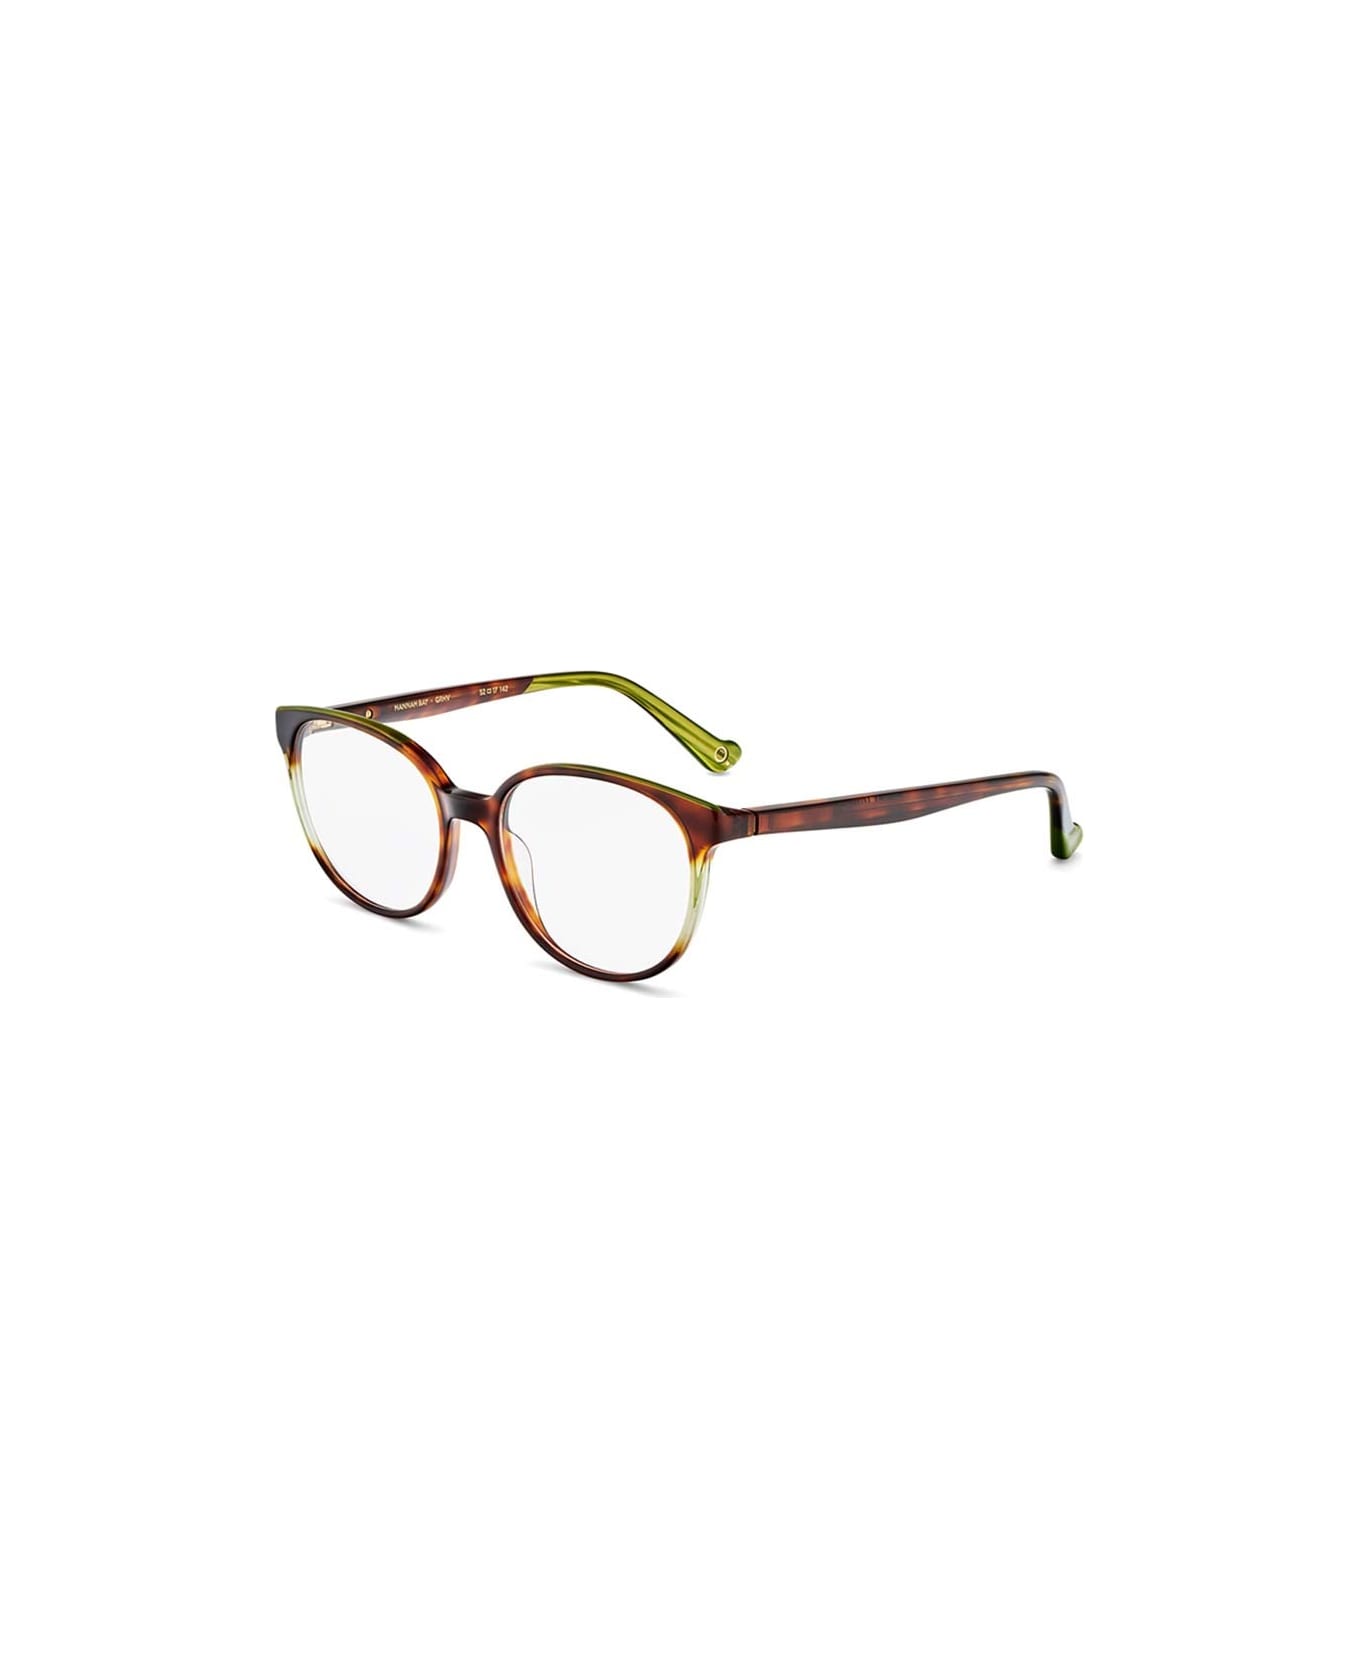 Etnia Barcelona Glasses - Verde アイウェア